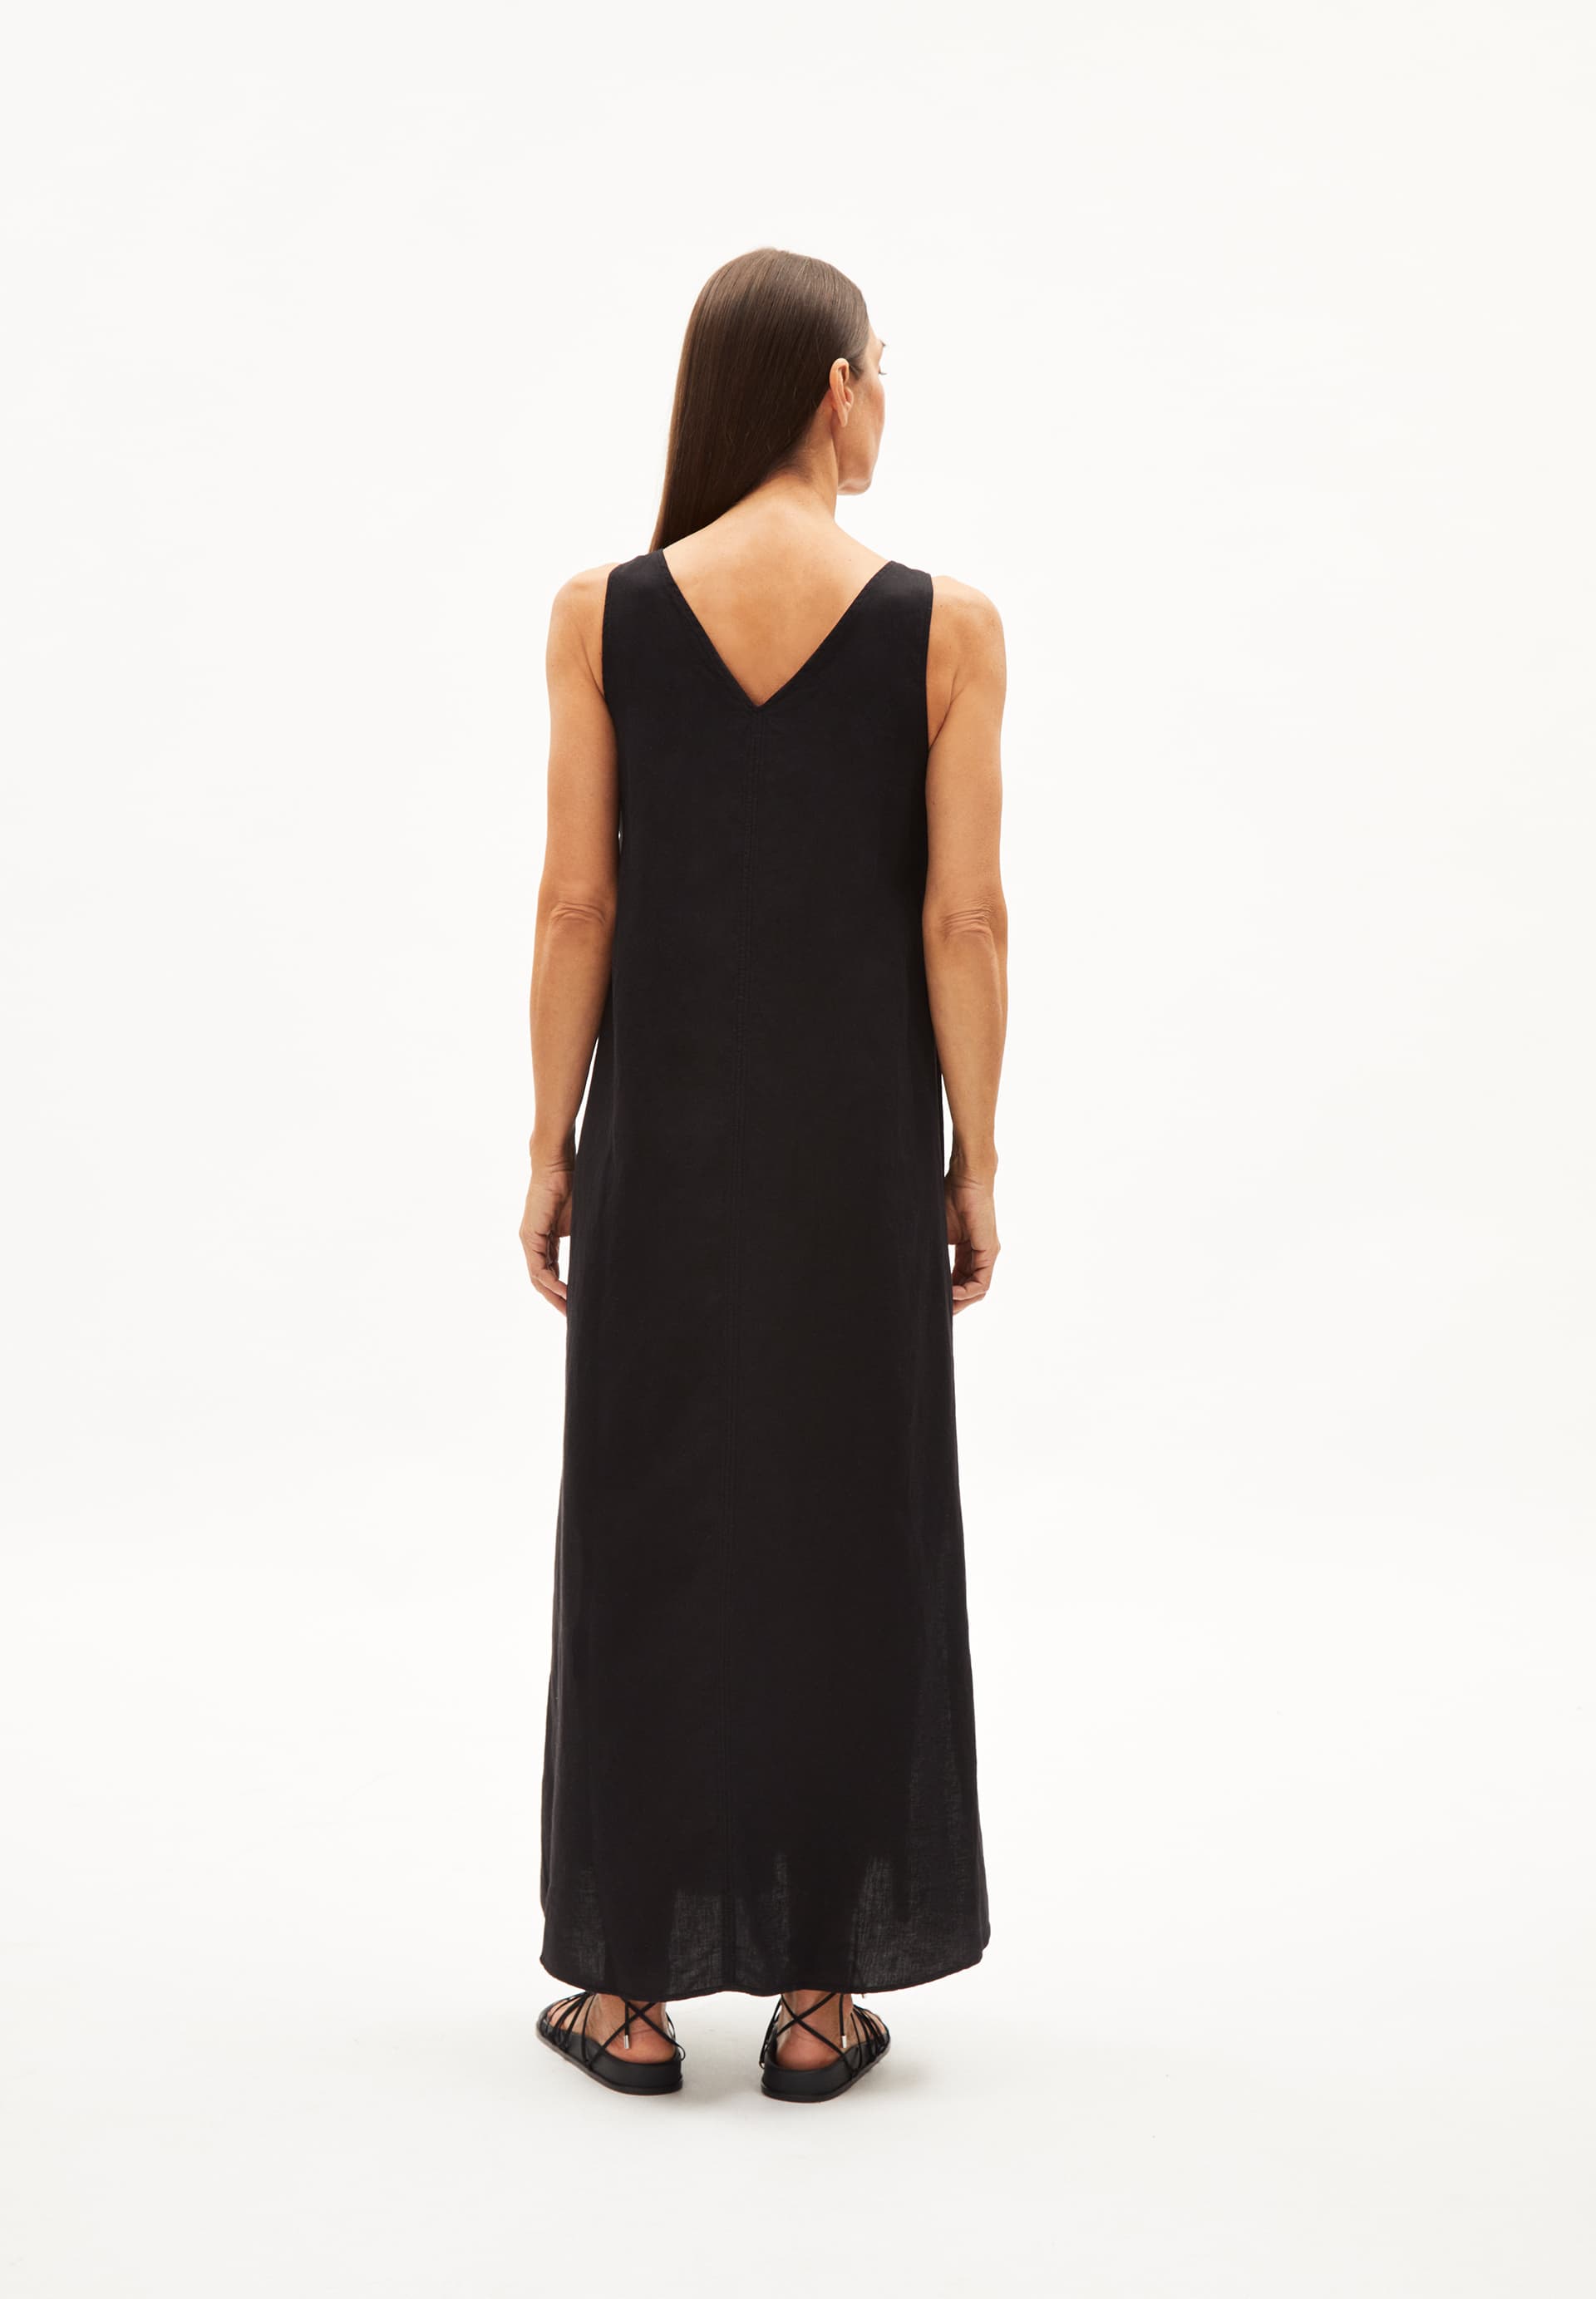 JORNAA LINO Woven Dress Regular Fit made of Linen-Mix